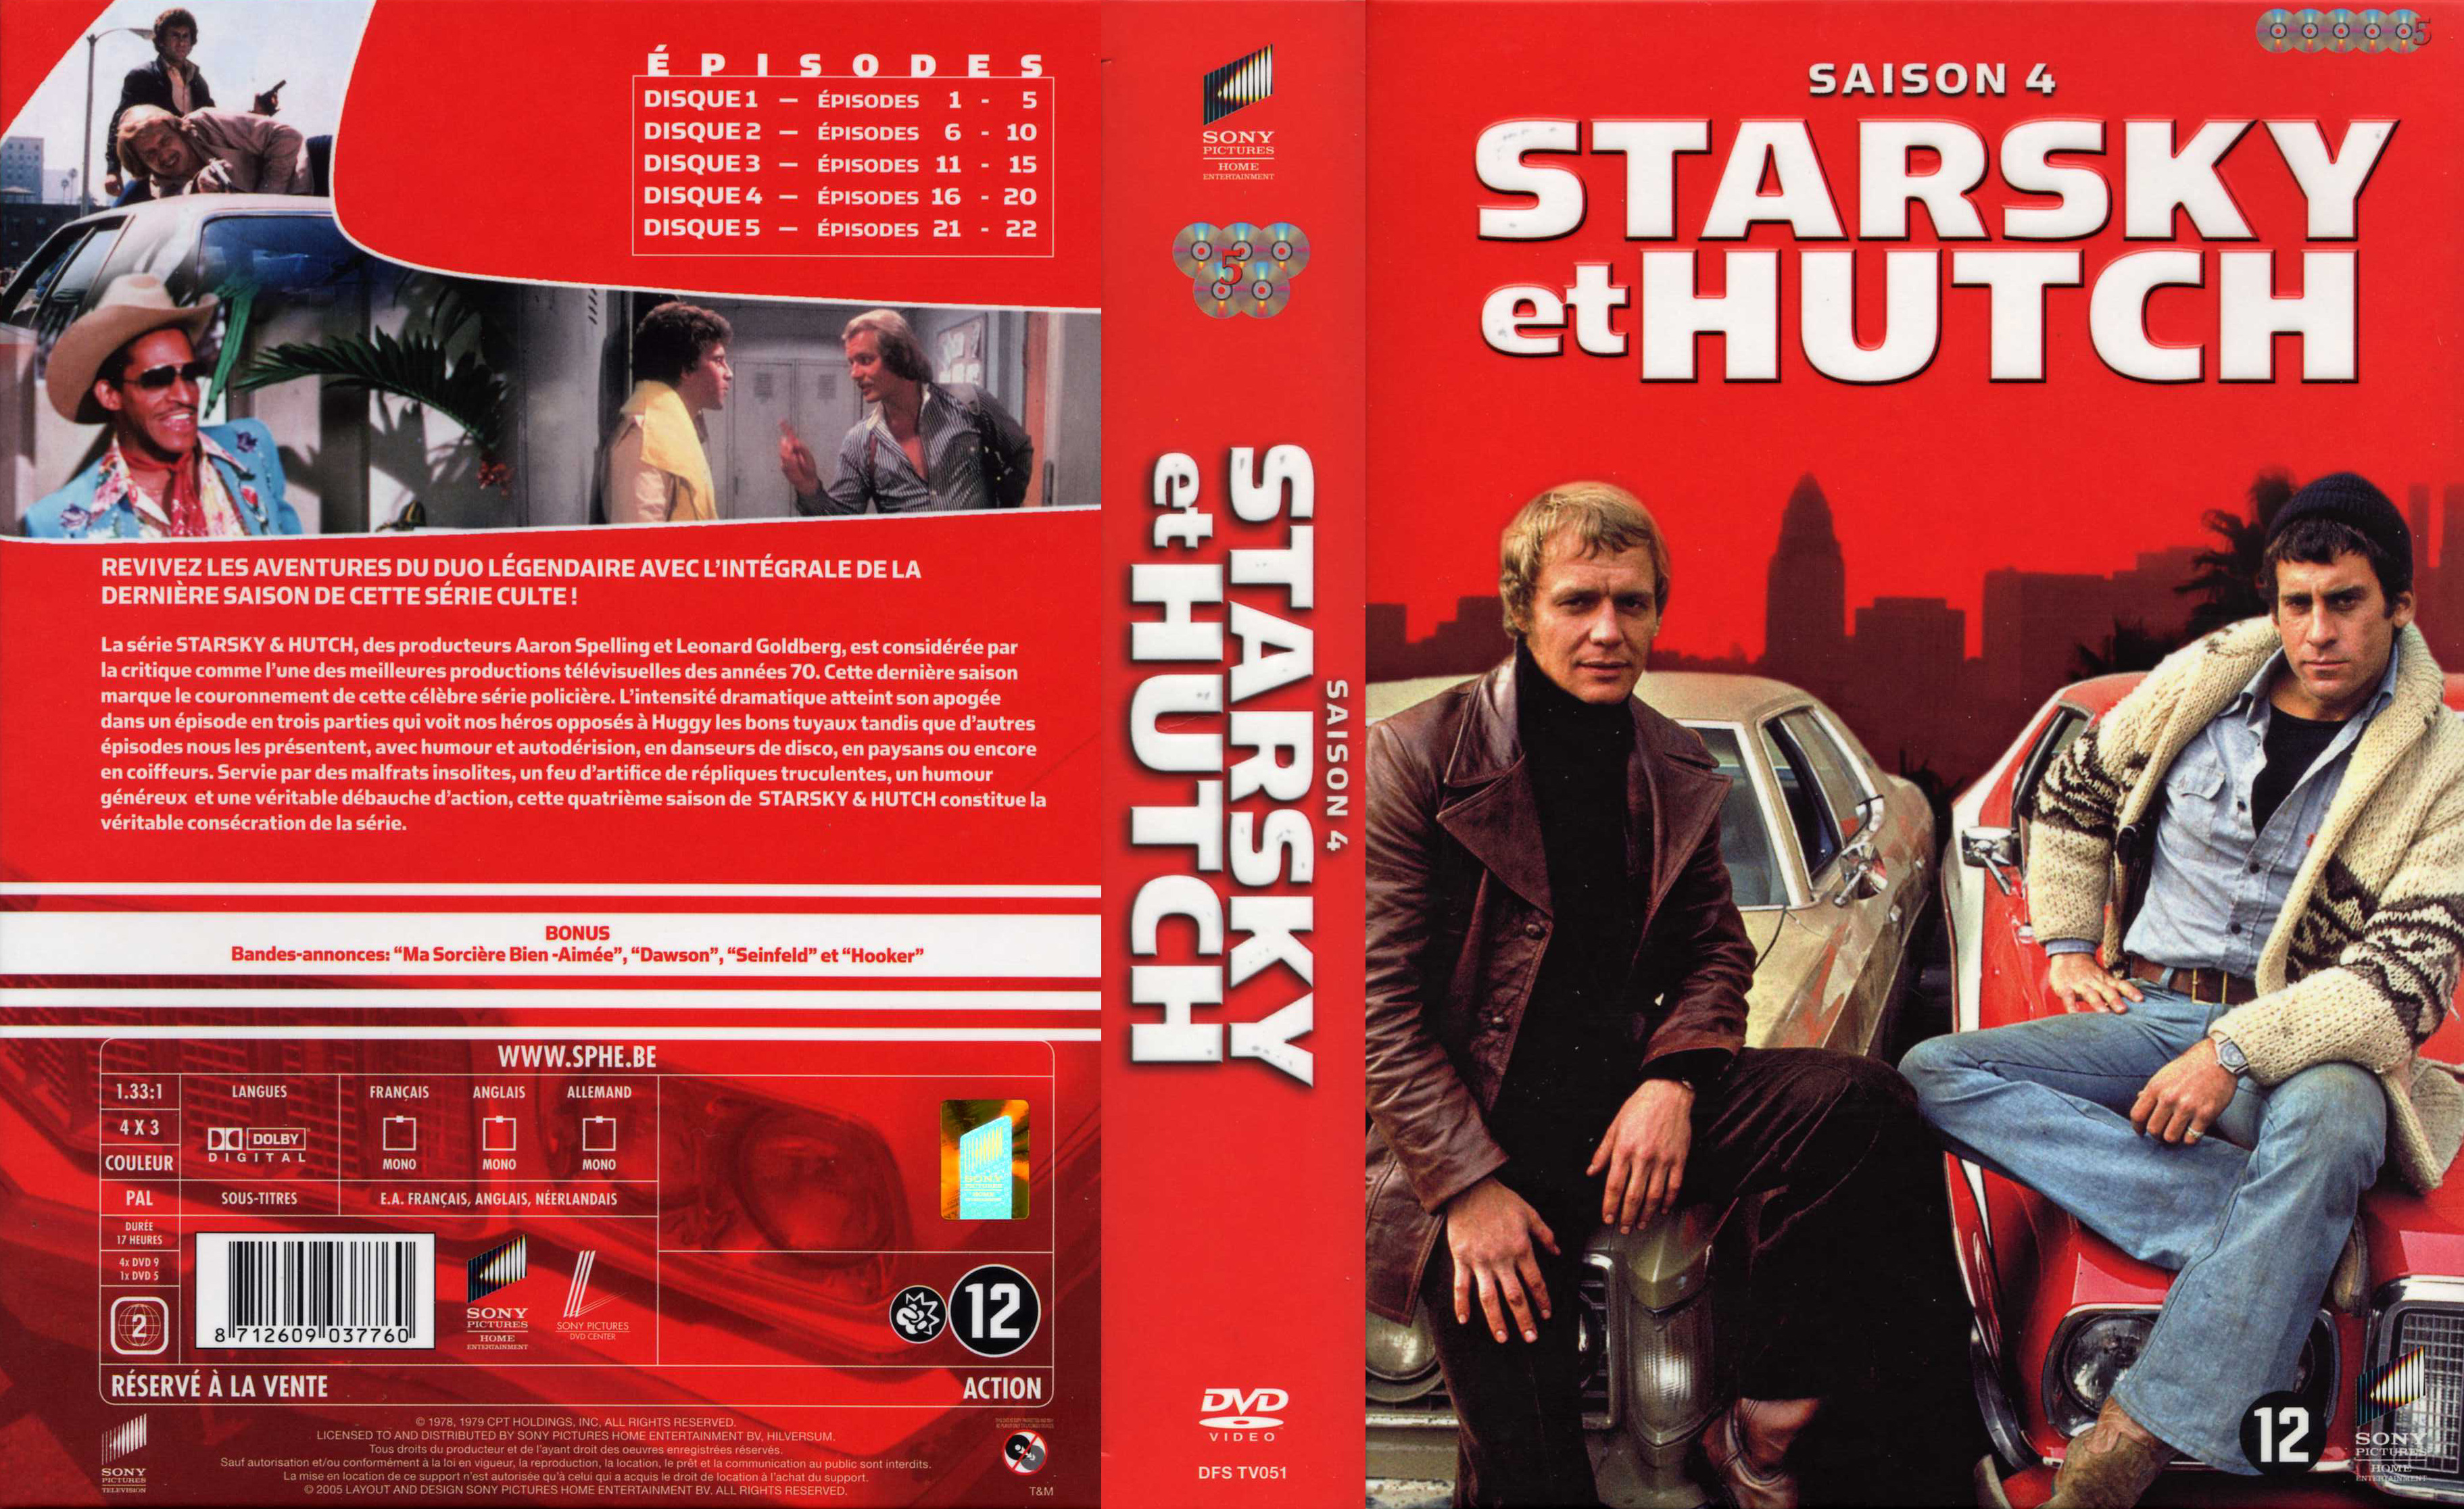 Jaquette DVD Starsky et Hutch saison 4